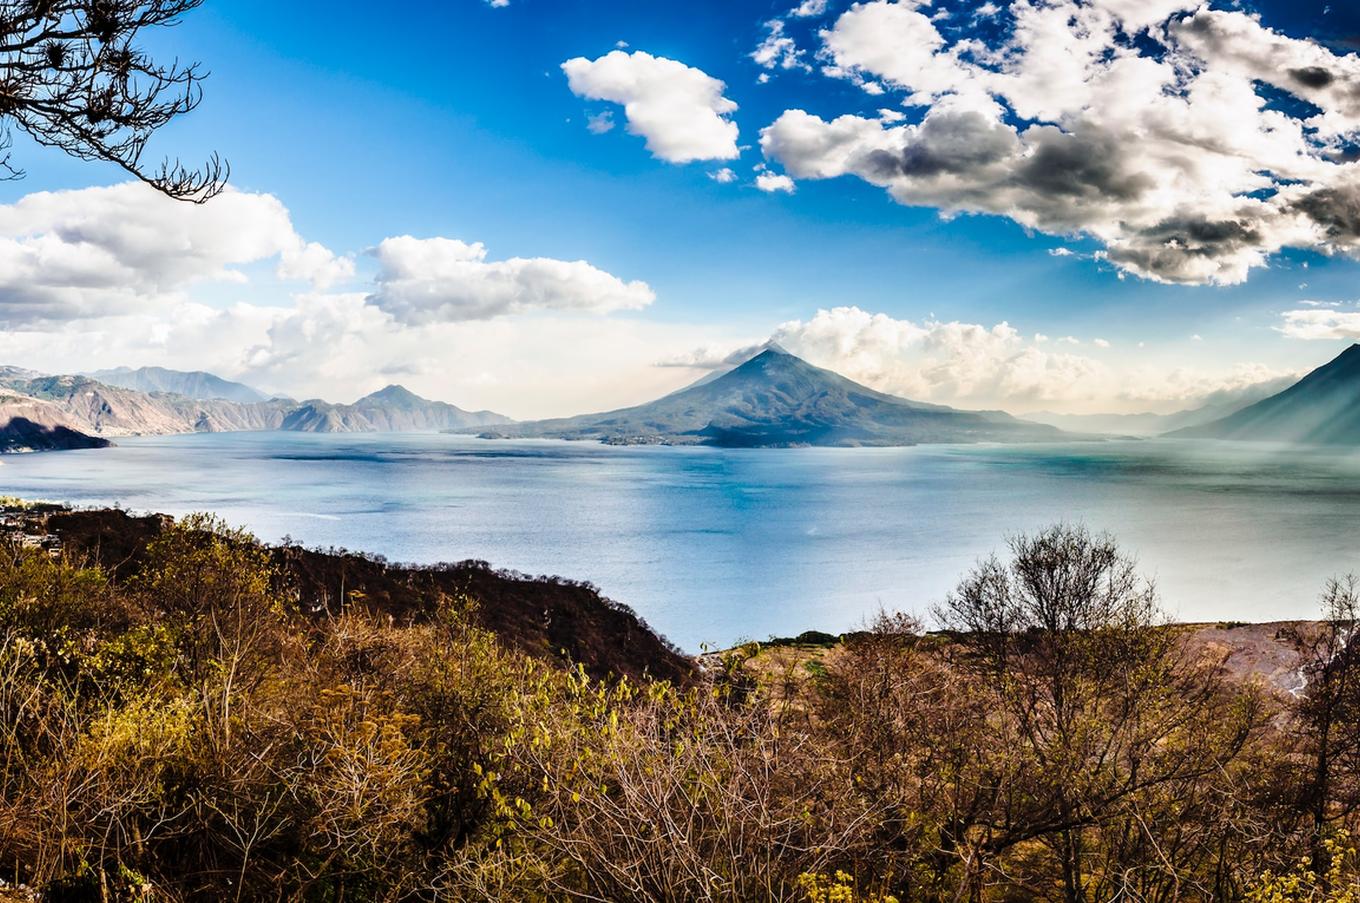 Los tres volcanes del lago Atitlán: San Pedro, Tolimán y Atitlán. Foto de Alexander Schimmeck en Unsplash. 